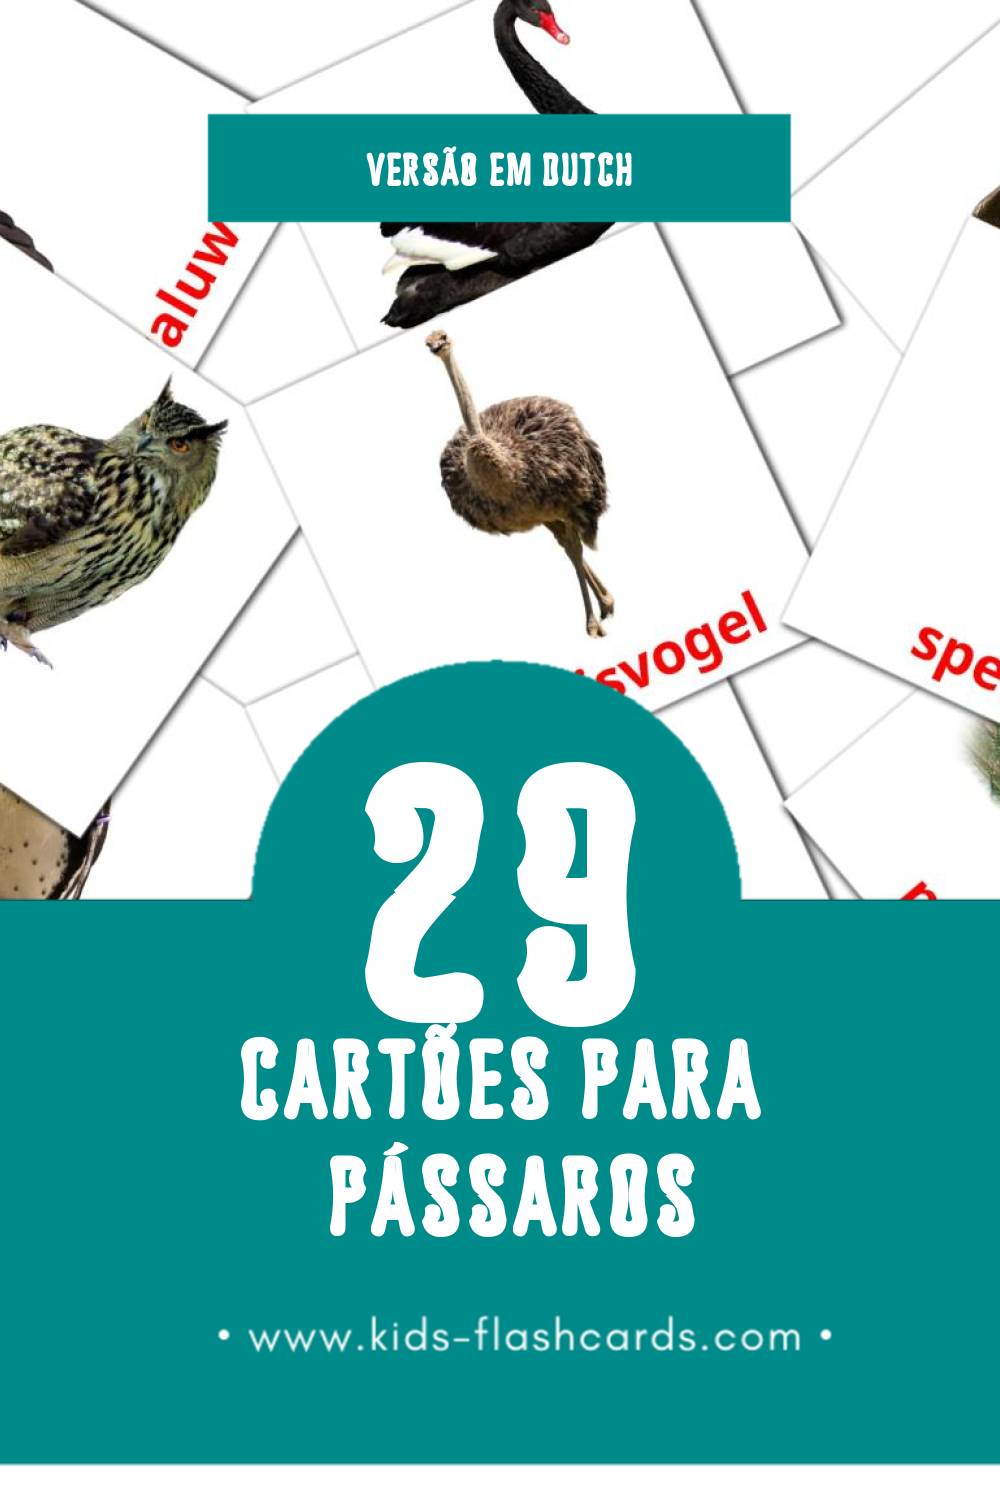 Flashcards de Vogels Visuais para Toddlers (29 cartões em Dutch)